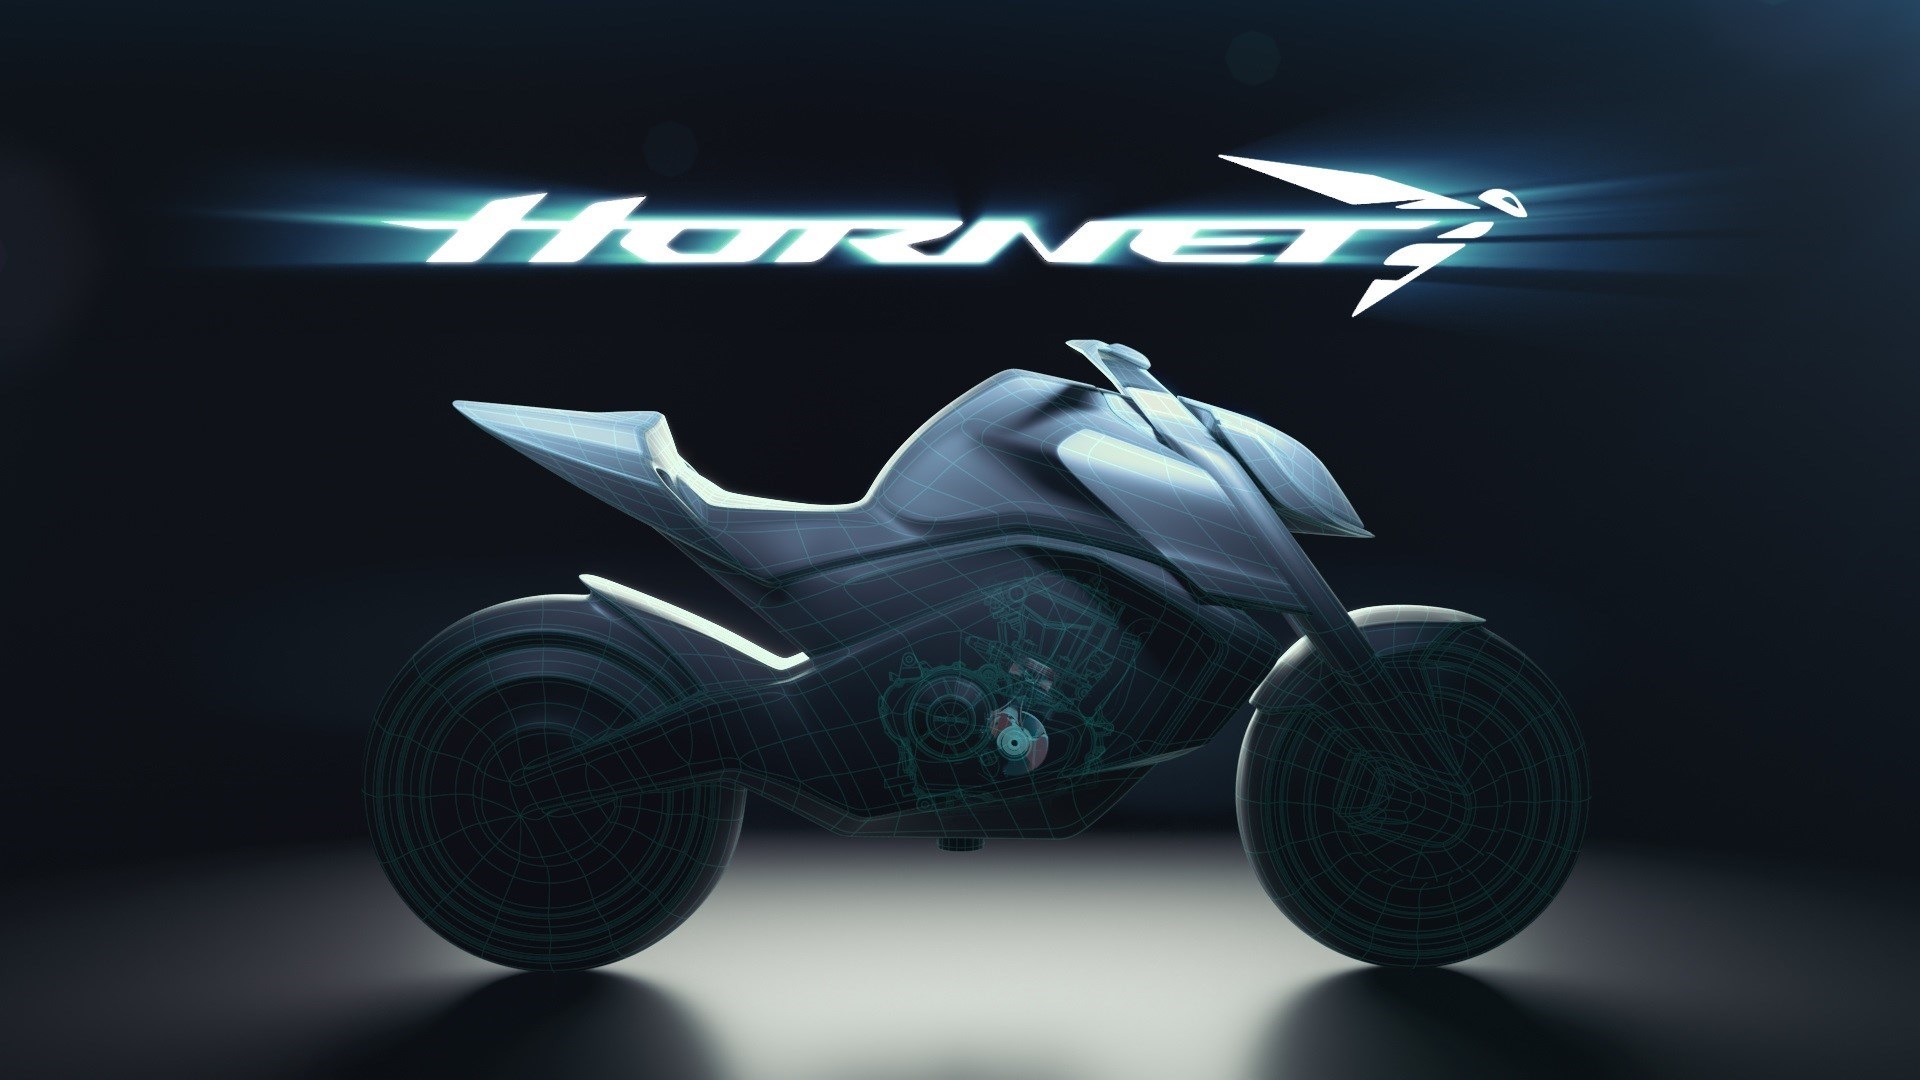 Nova Honda Hornet surge agressiva em inéditas imagens oficiais